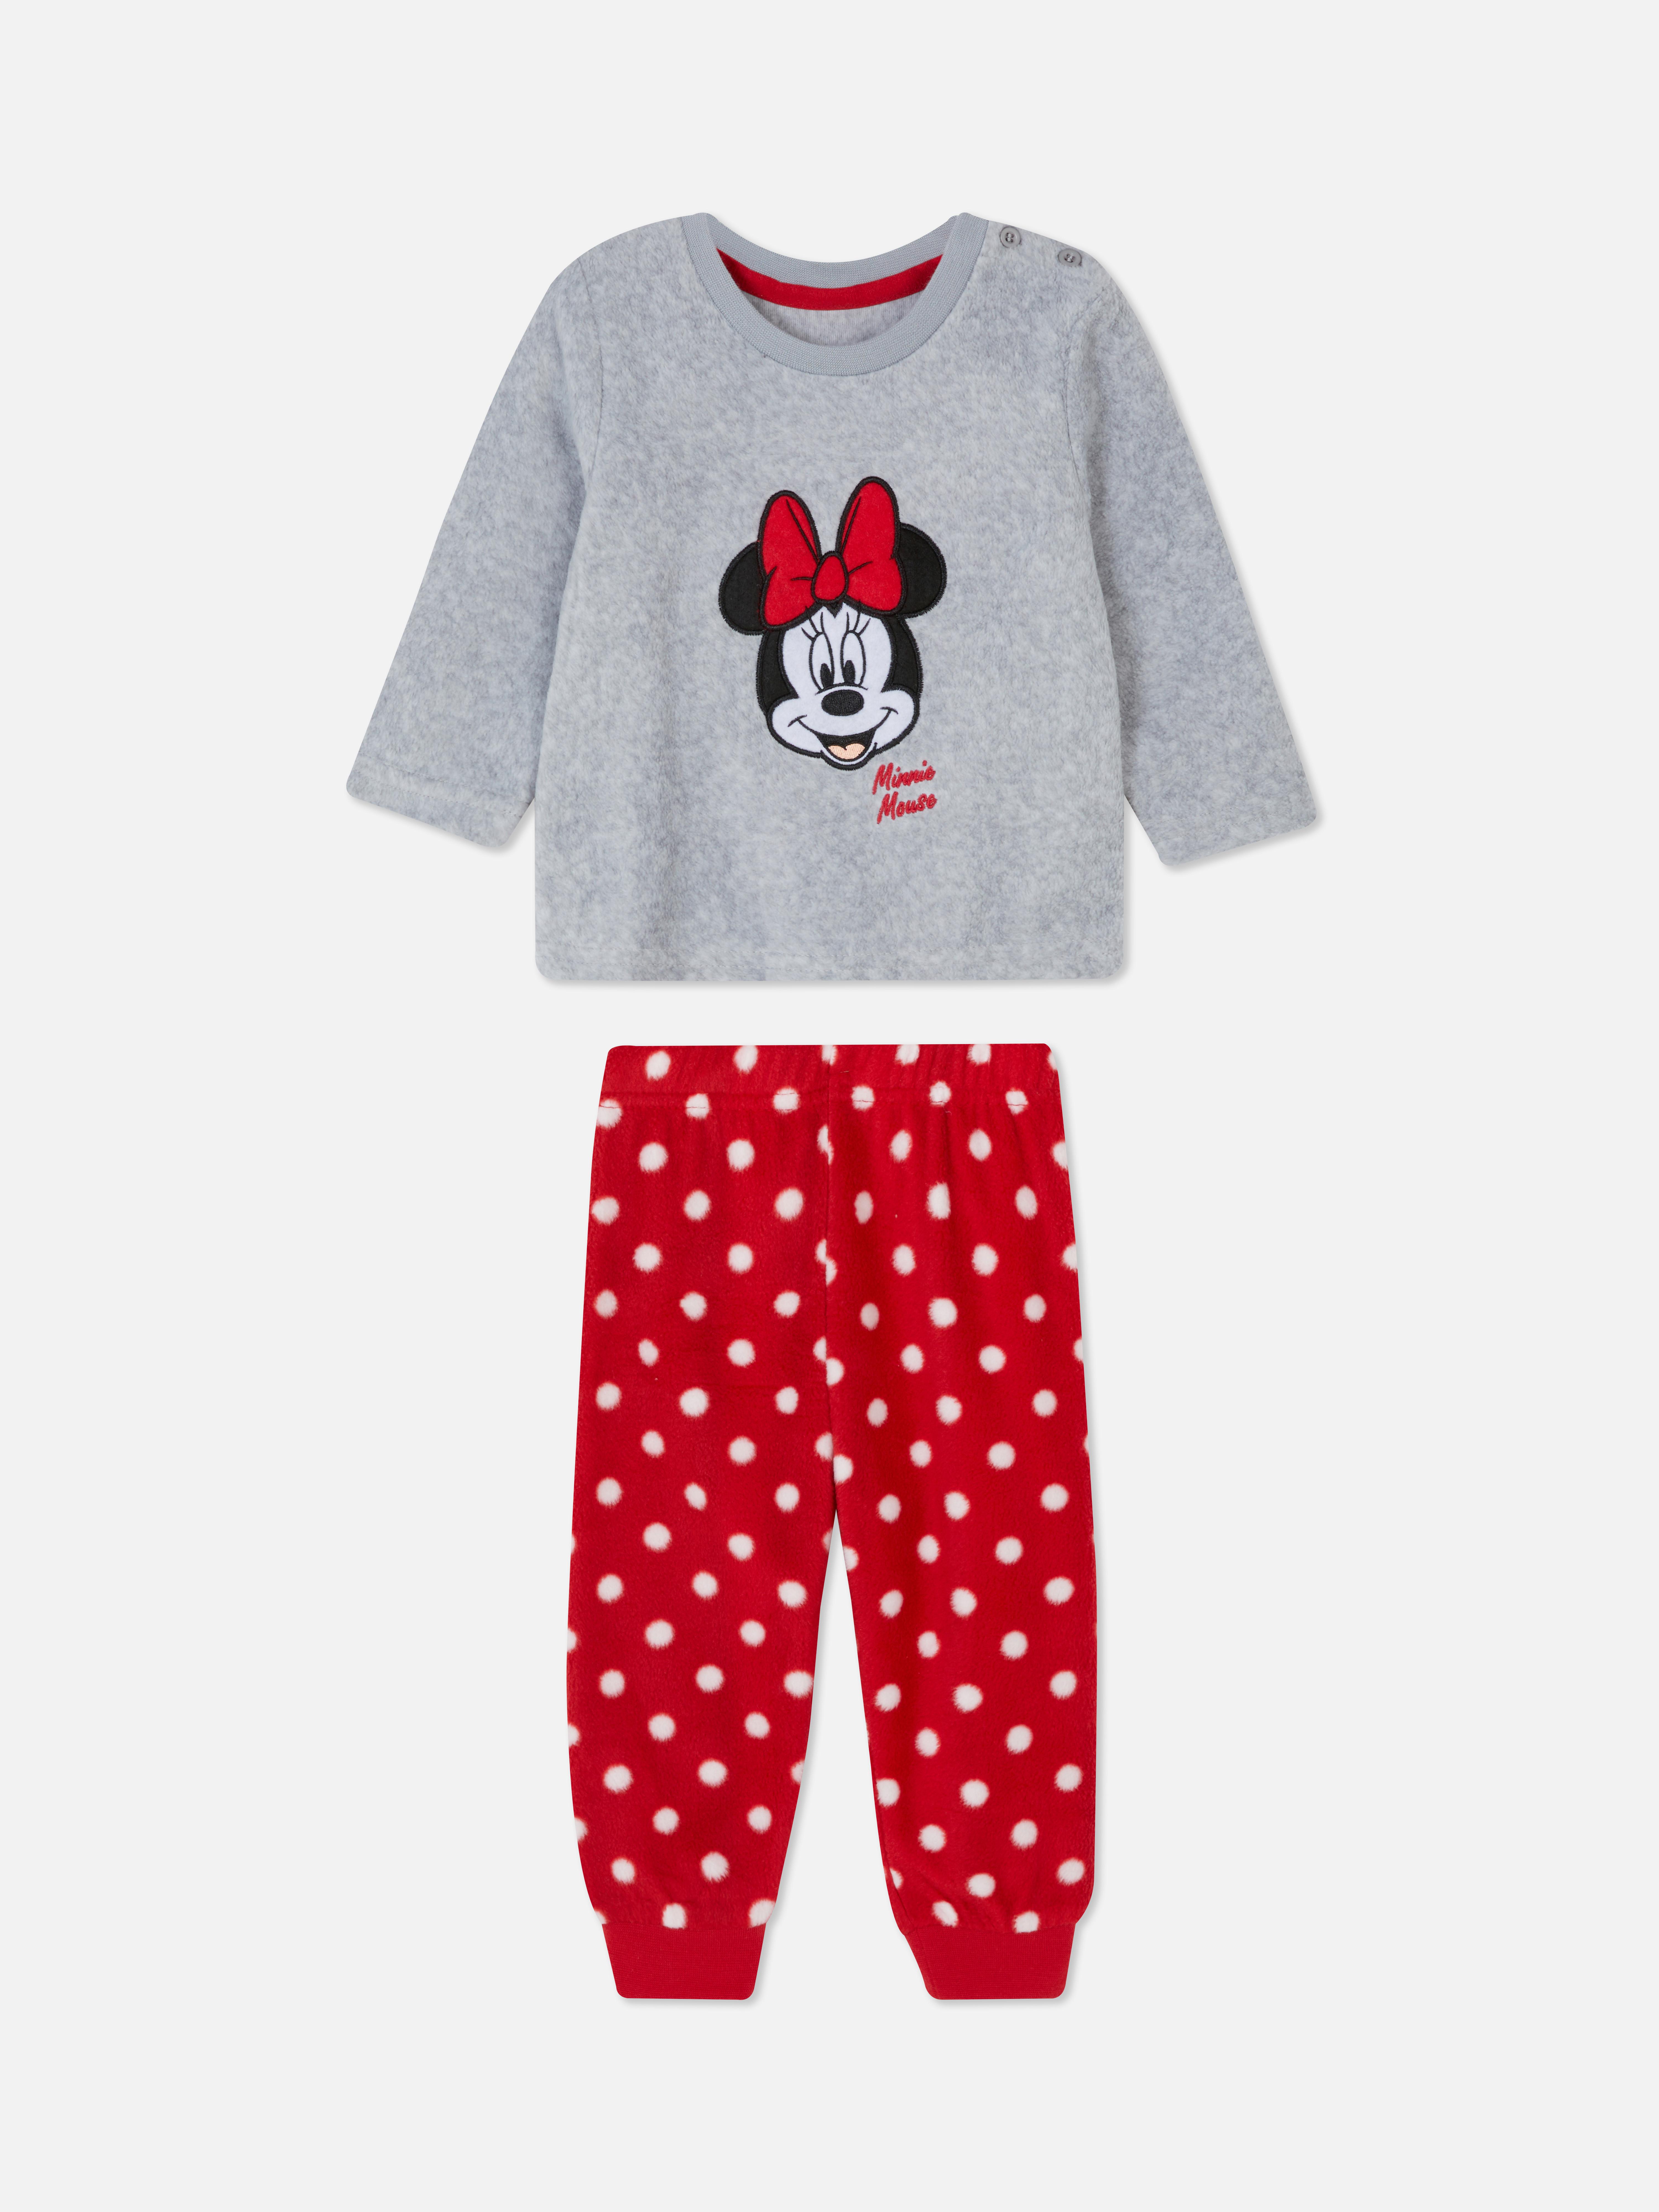 Disney's Minnie Mouse Polka Dot Fleece Pajamas